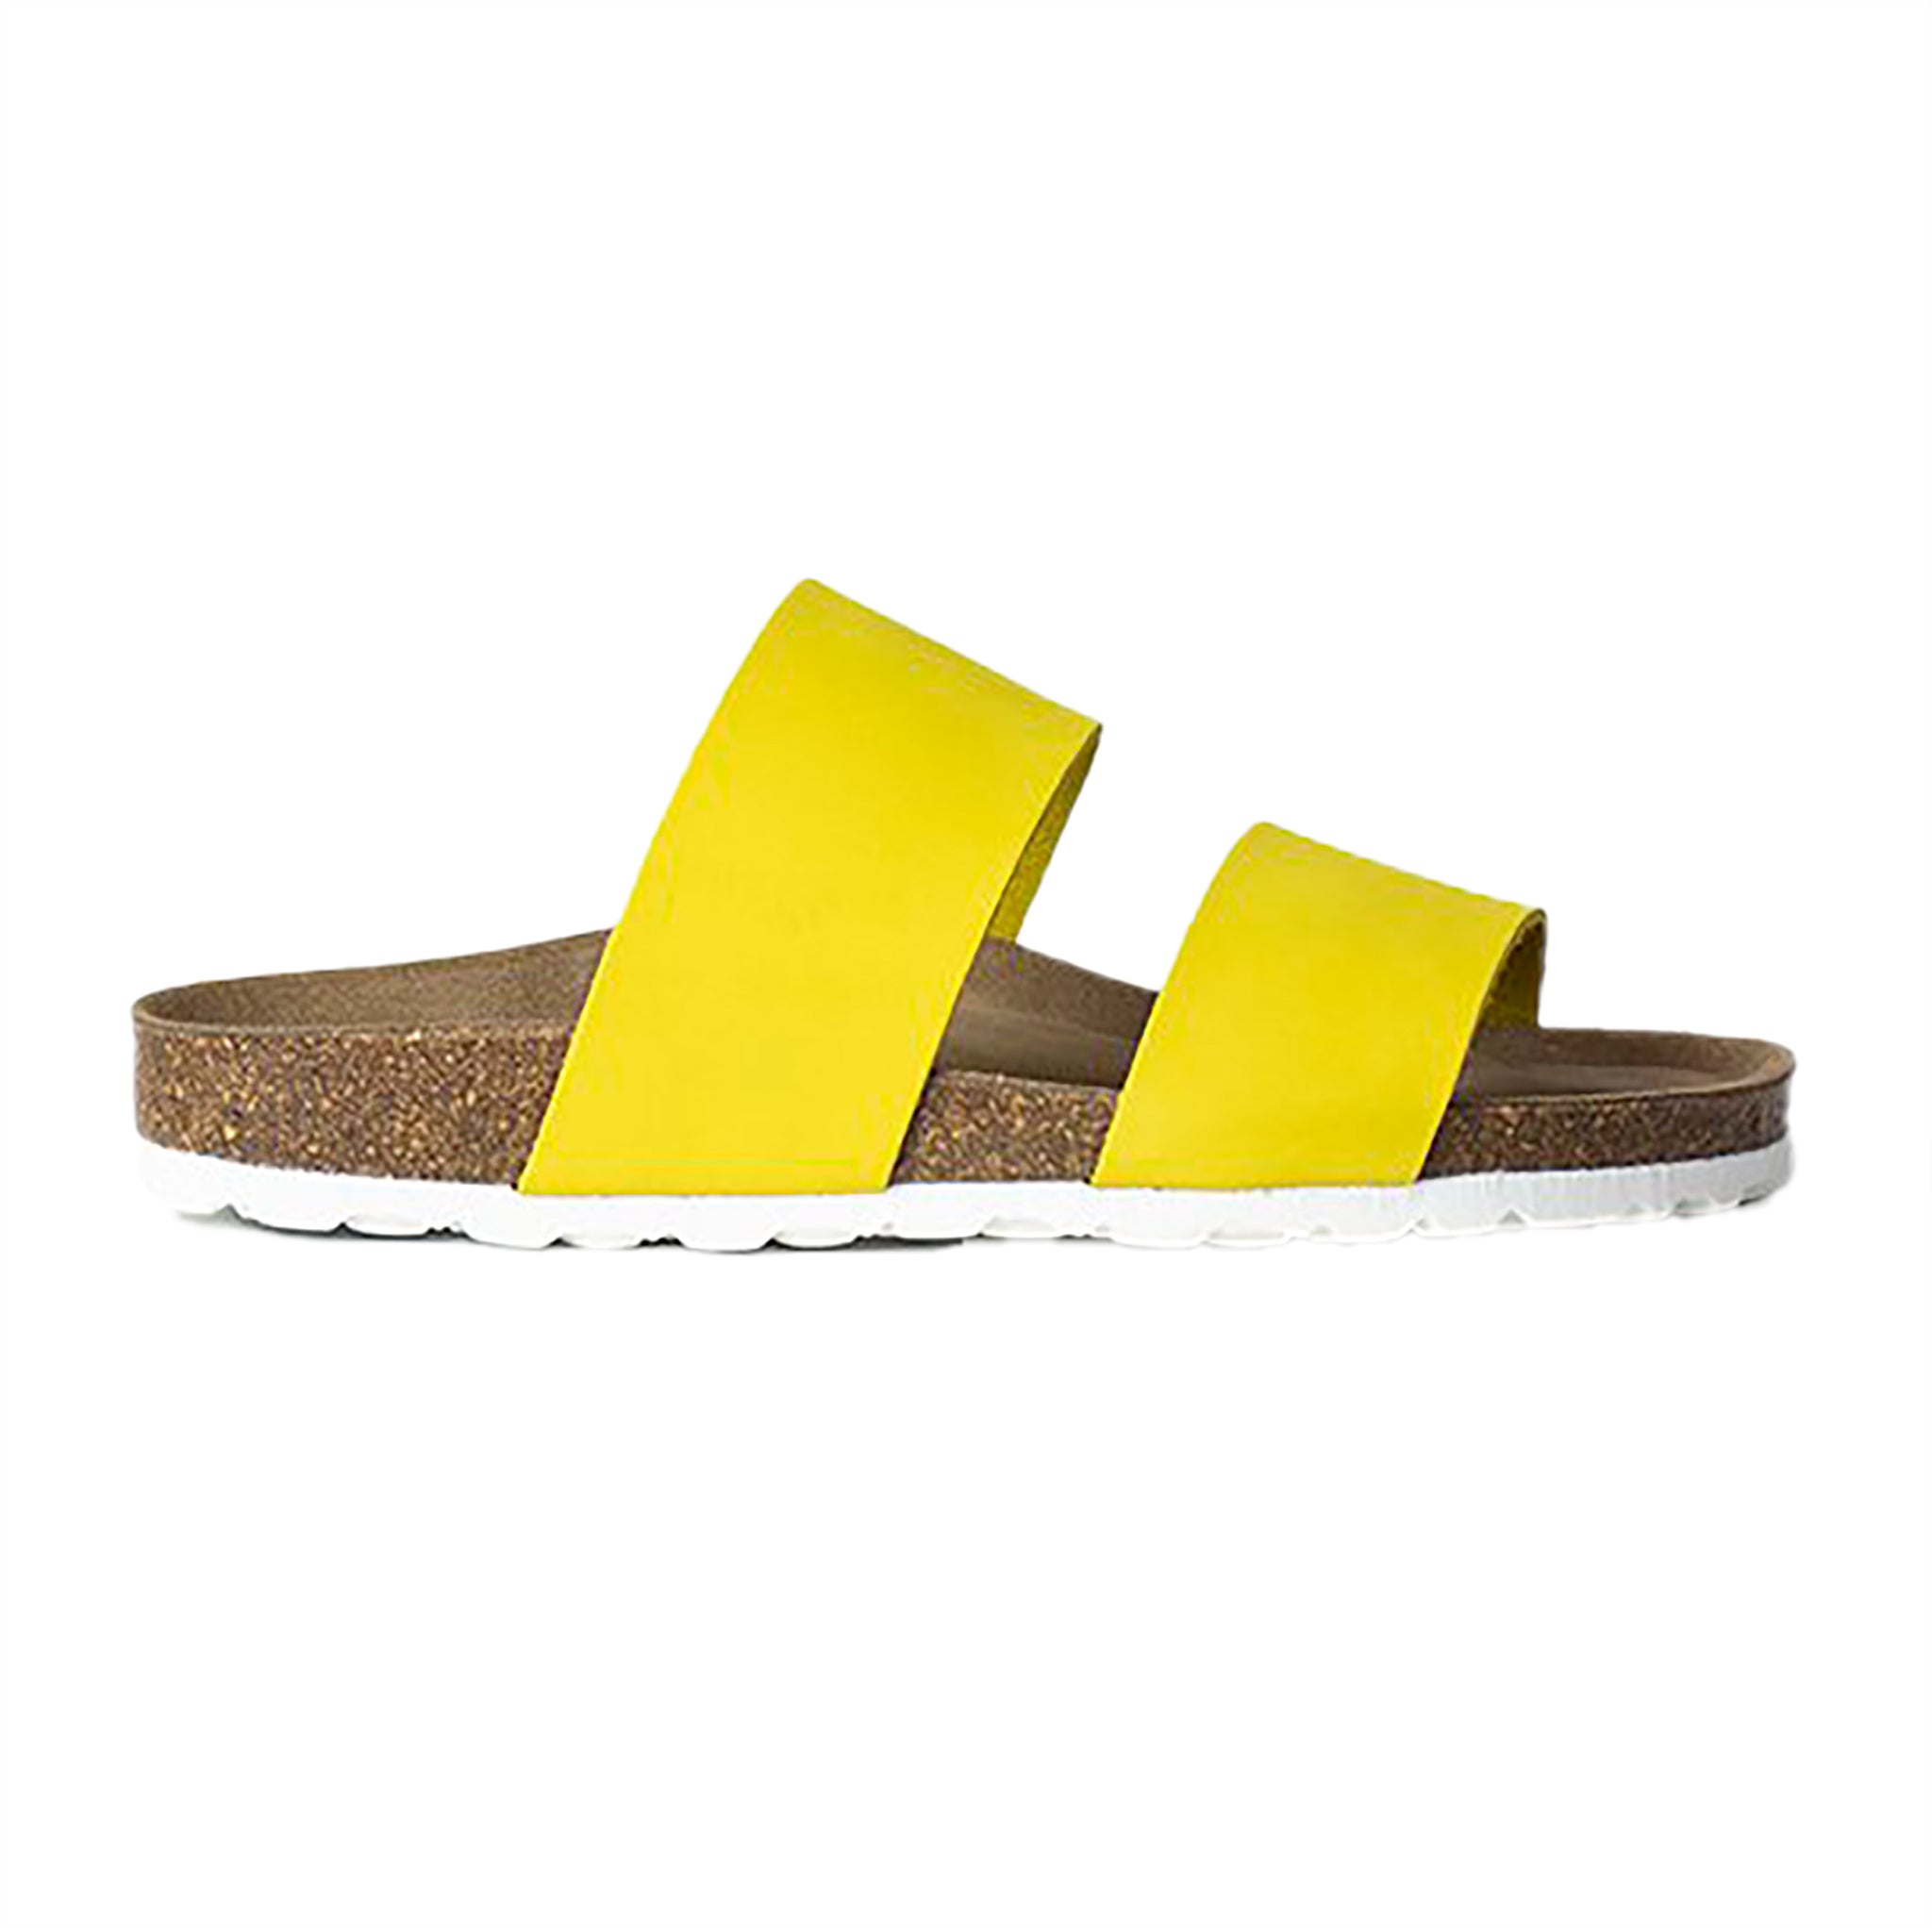 Re:Designed Kelli sandaali. Päällisessä kaksi leveää vyötettä, keltaista nahkaa. Pohja ruskea ja valkoinen. Sivukuva.